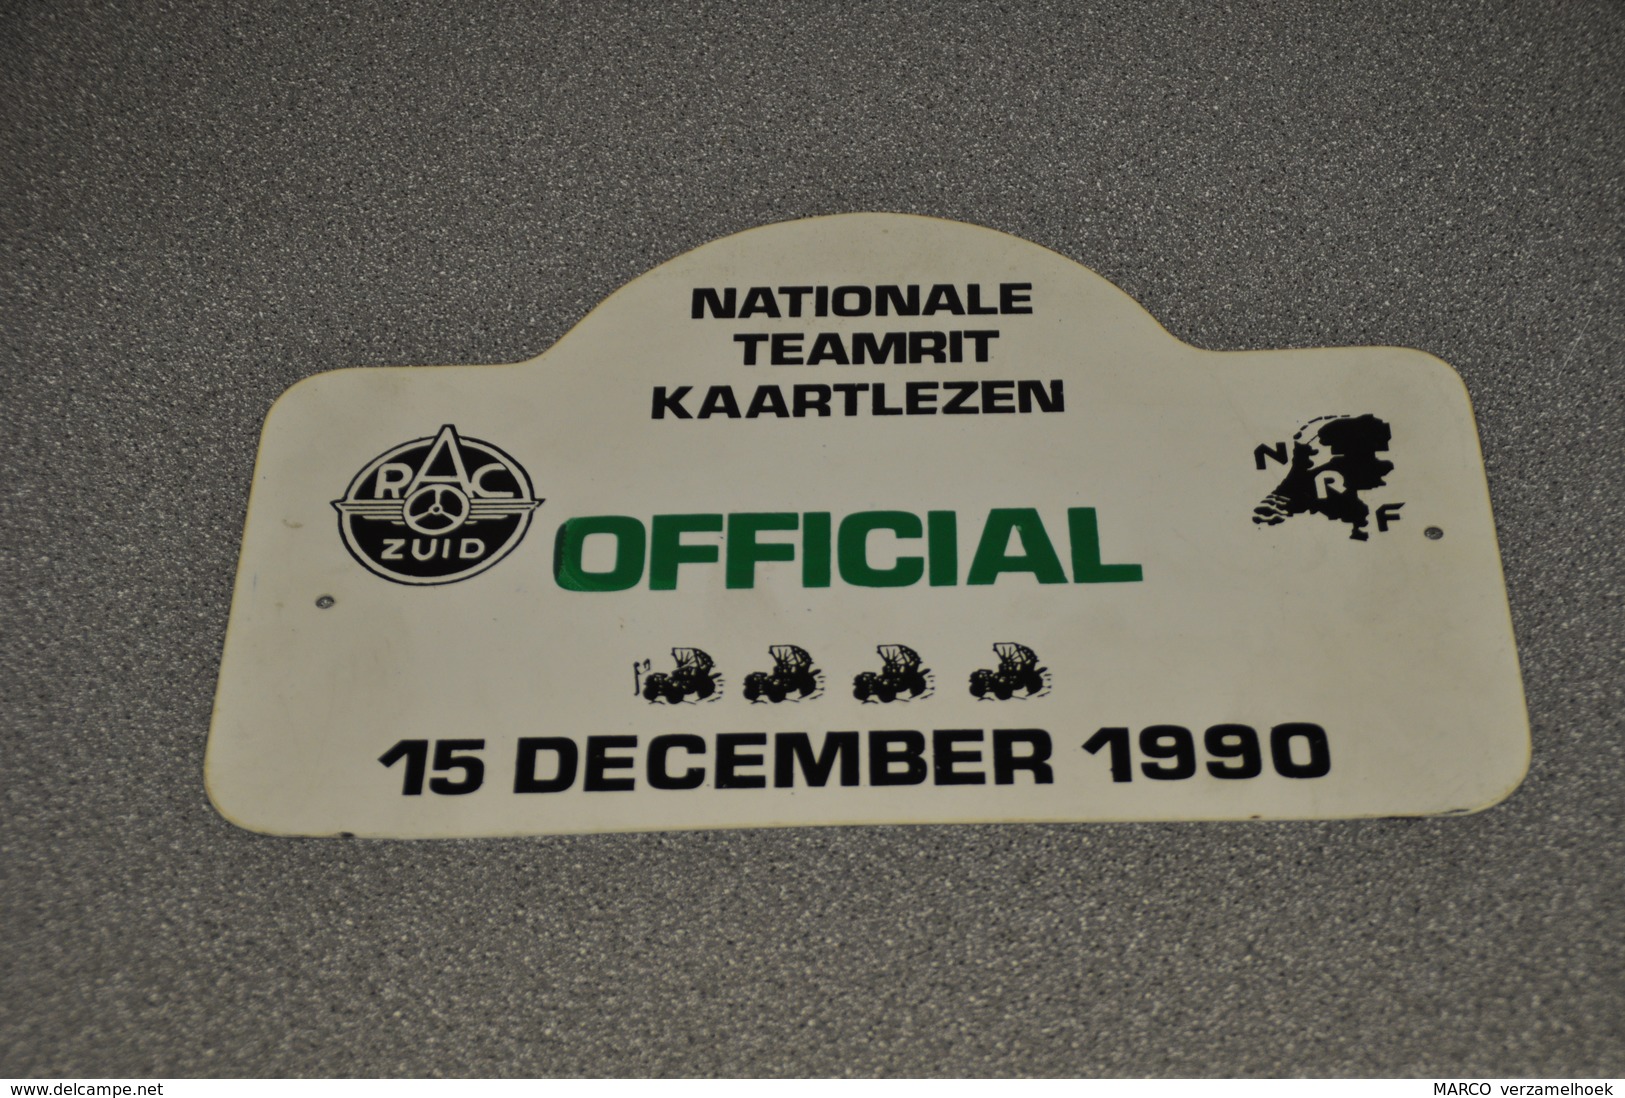 Rally Plaat-rallye Plaque Plastic: Nationale Teamrit Kaartlezen 1990 OFFICIAL RAC-zuid NRF - Plaques De Rallye